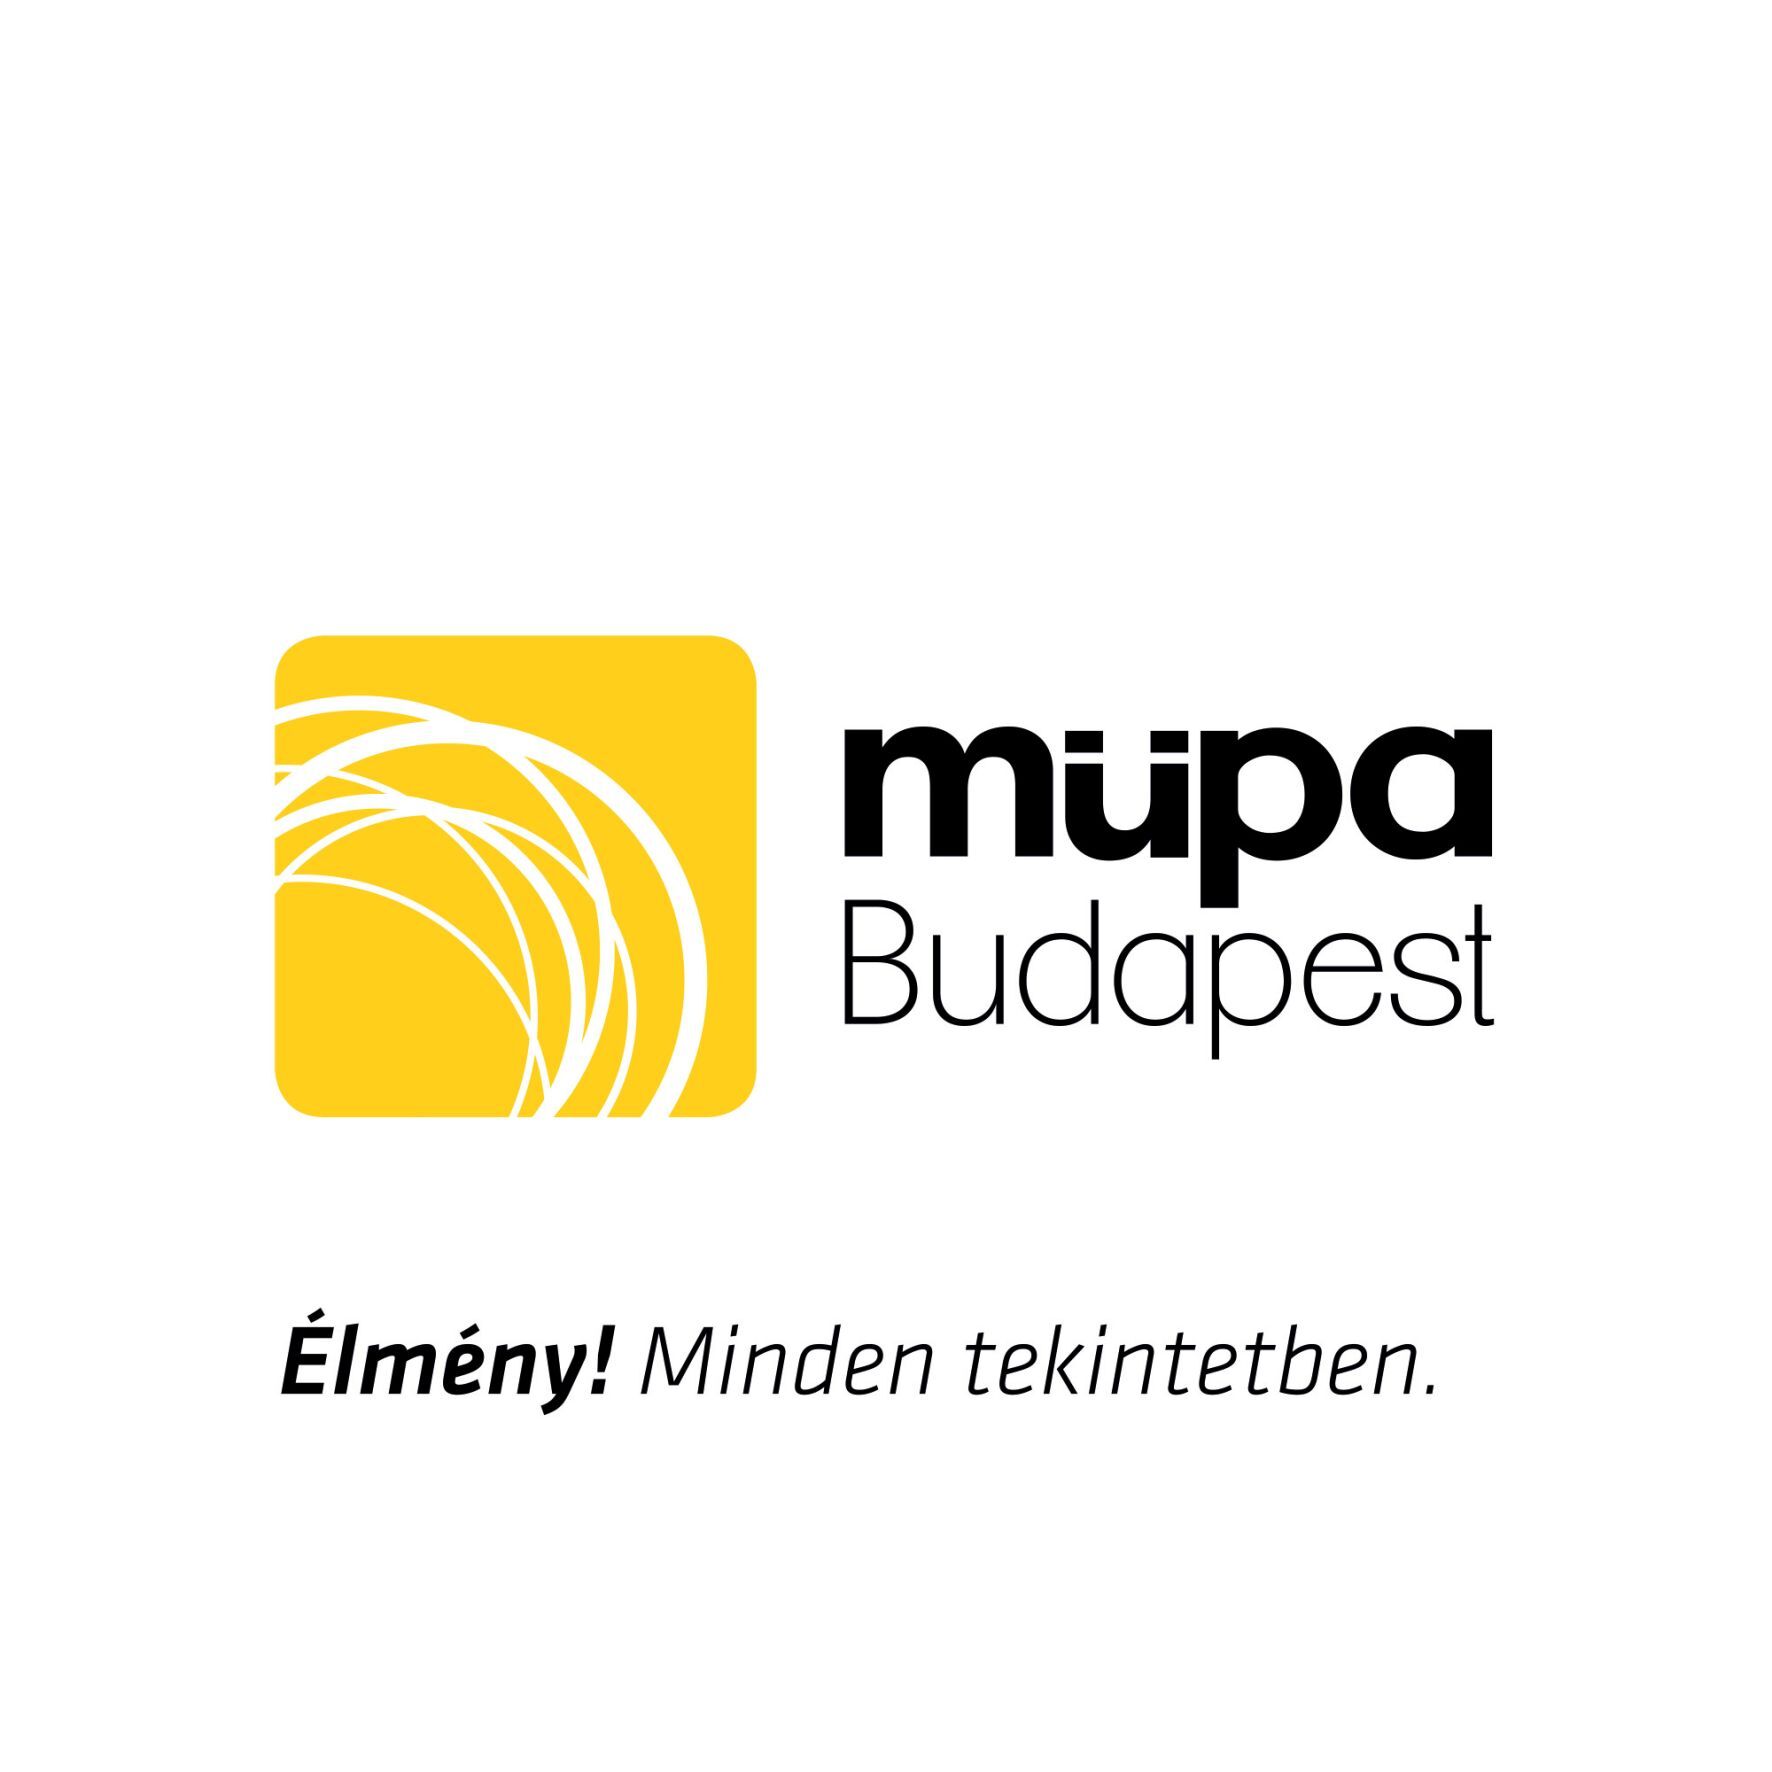 Mupa logo 2015 feher sarga fekete